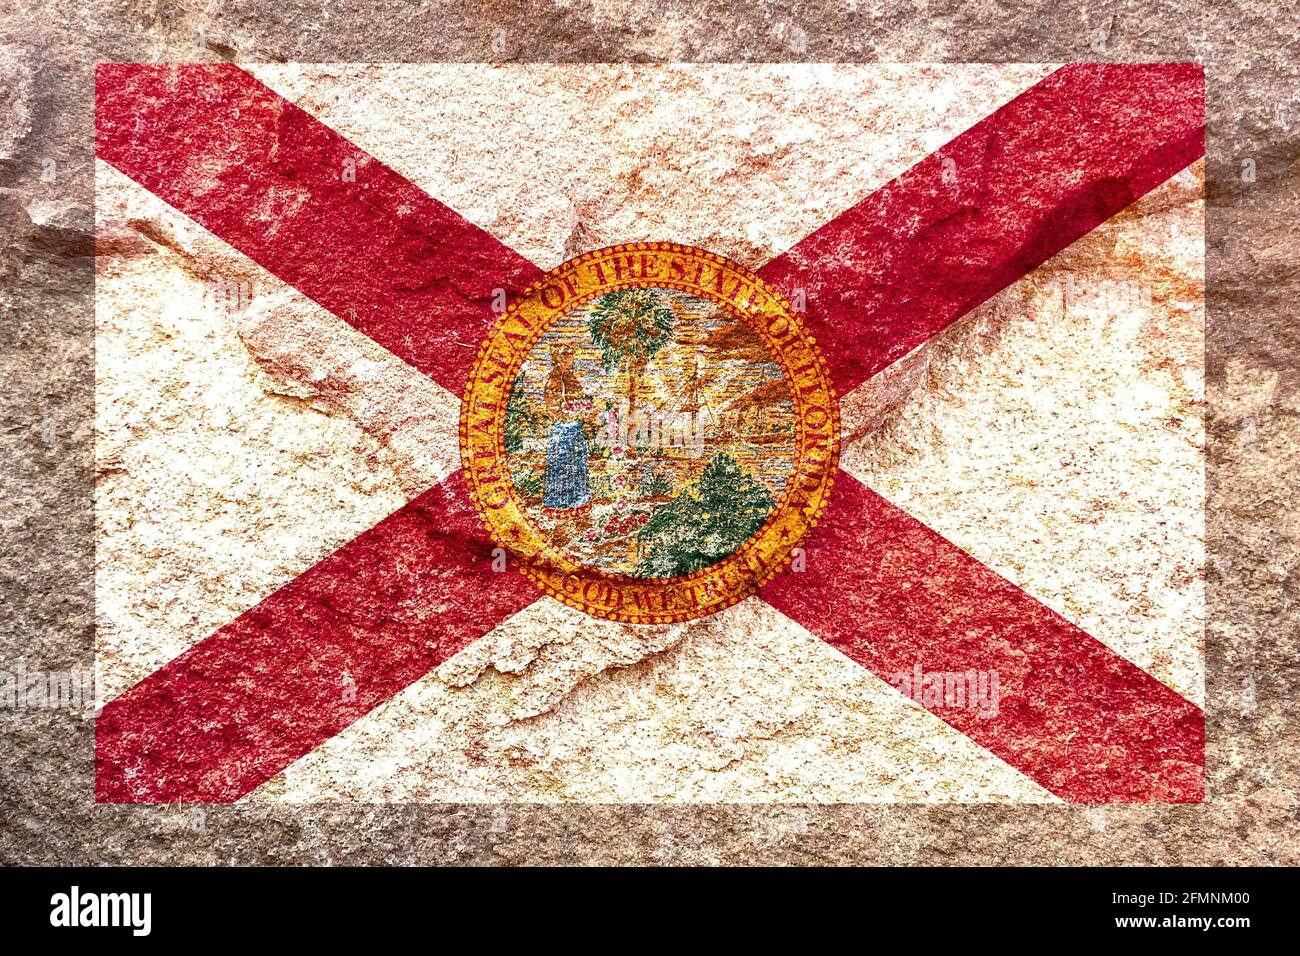 Verblasste Florida State Flag Icon Muster isoliert auf verwitterten Körper Felswand Hintergrund Stockfoto